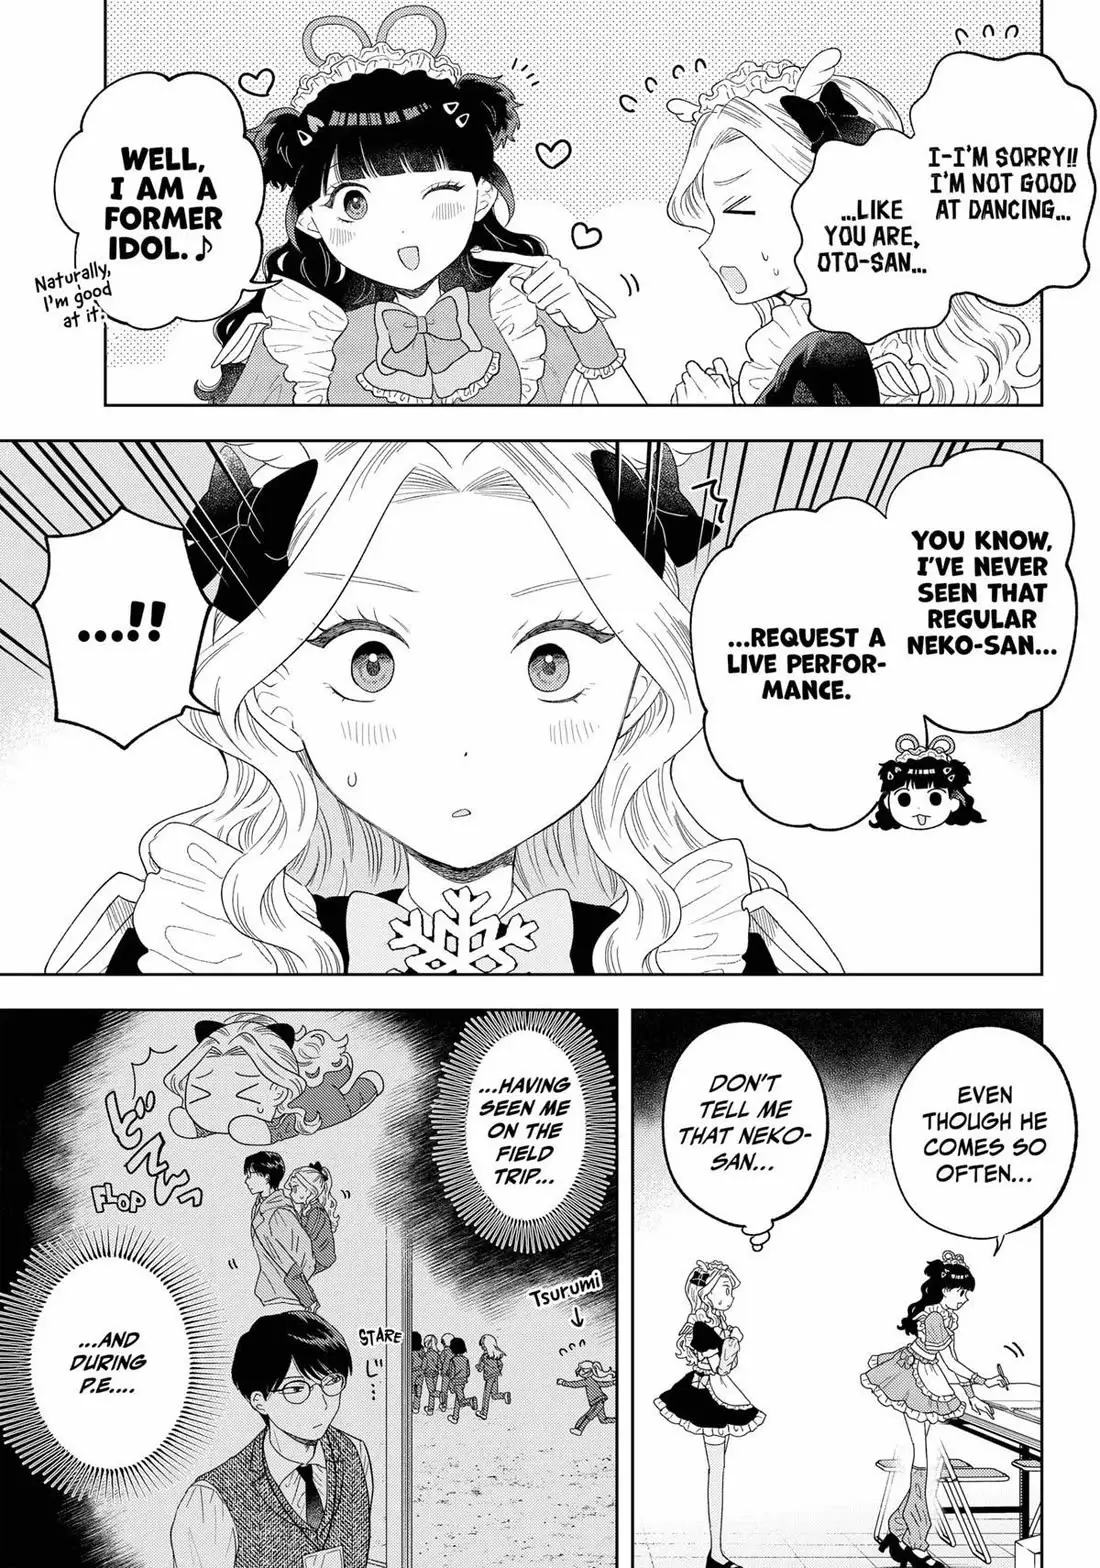 Tsuruko Returns The Favor - 18 page 5-2dbf9f3e